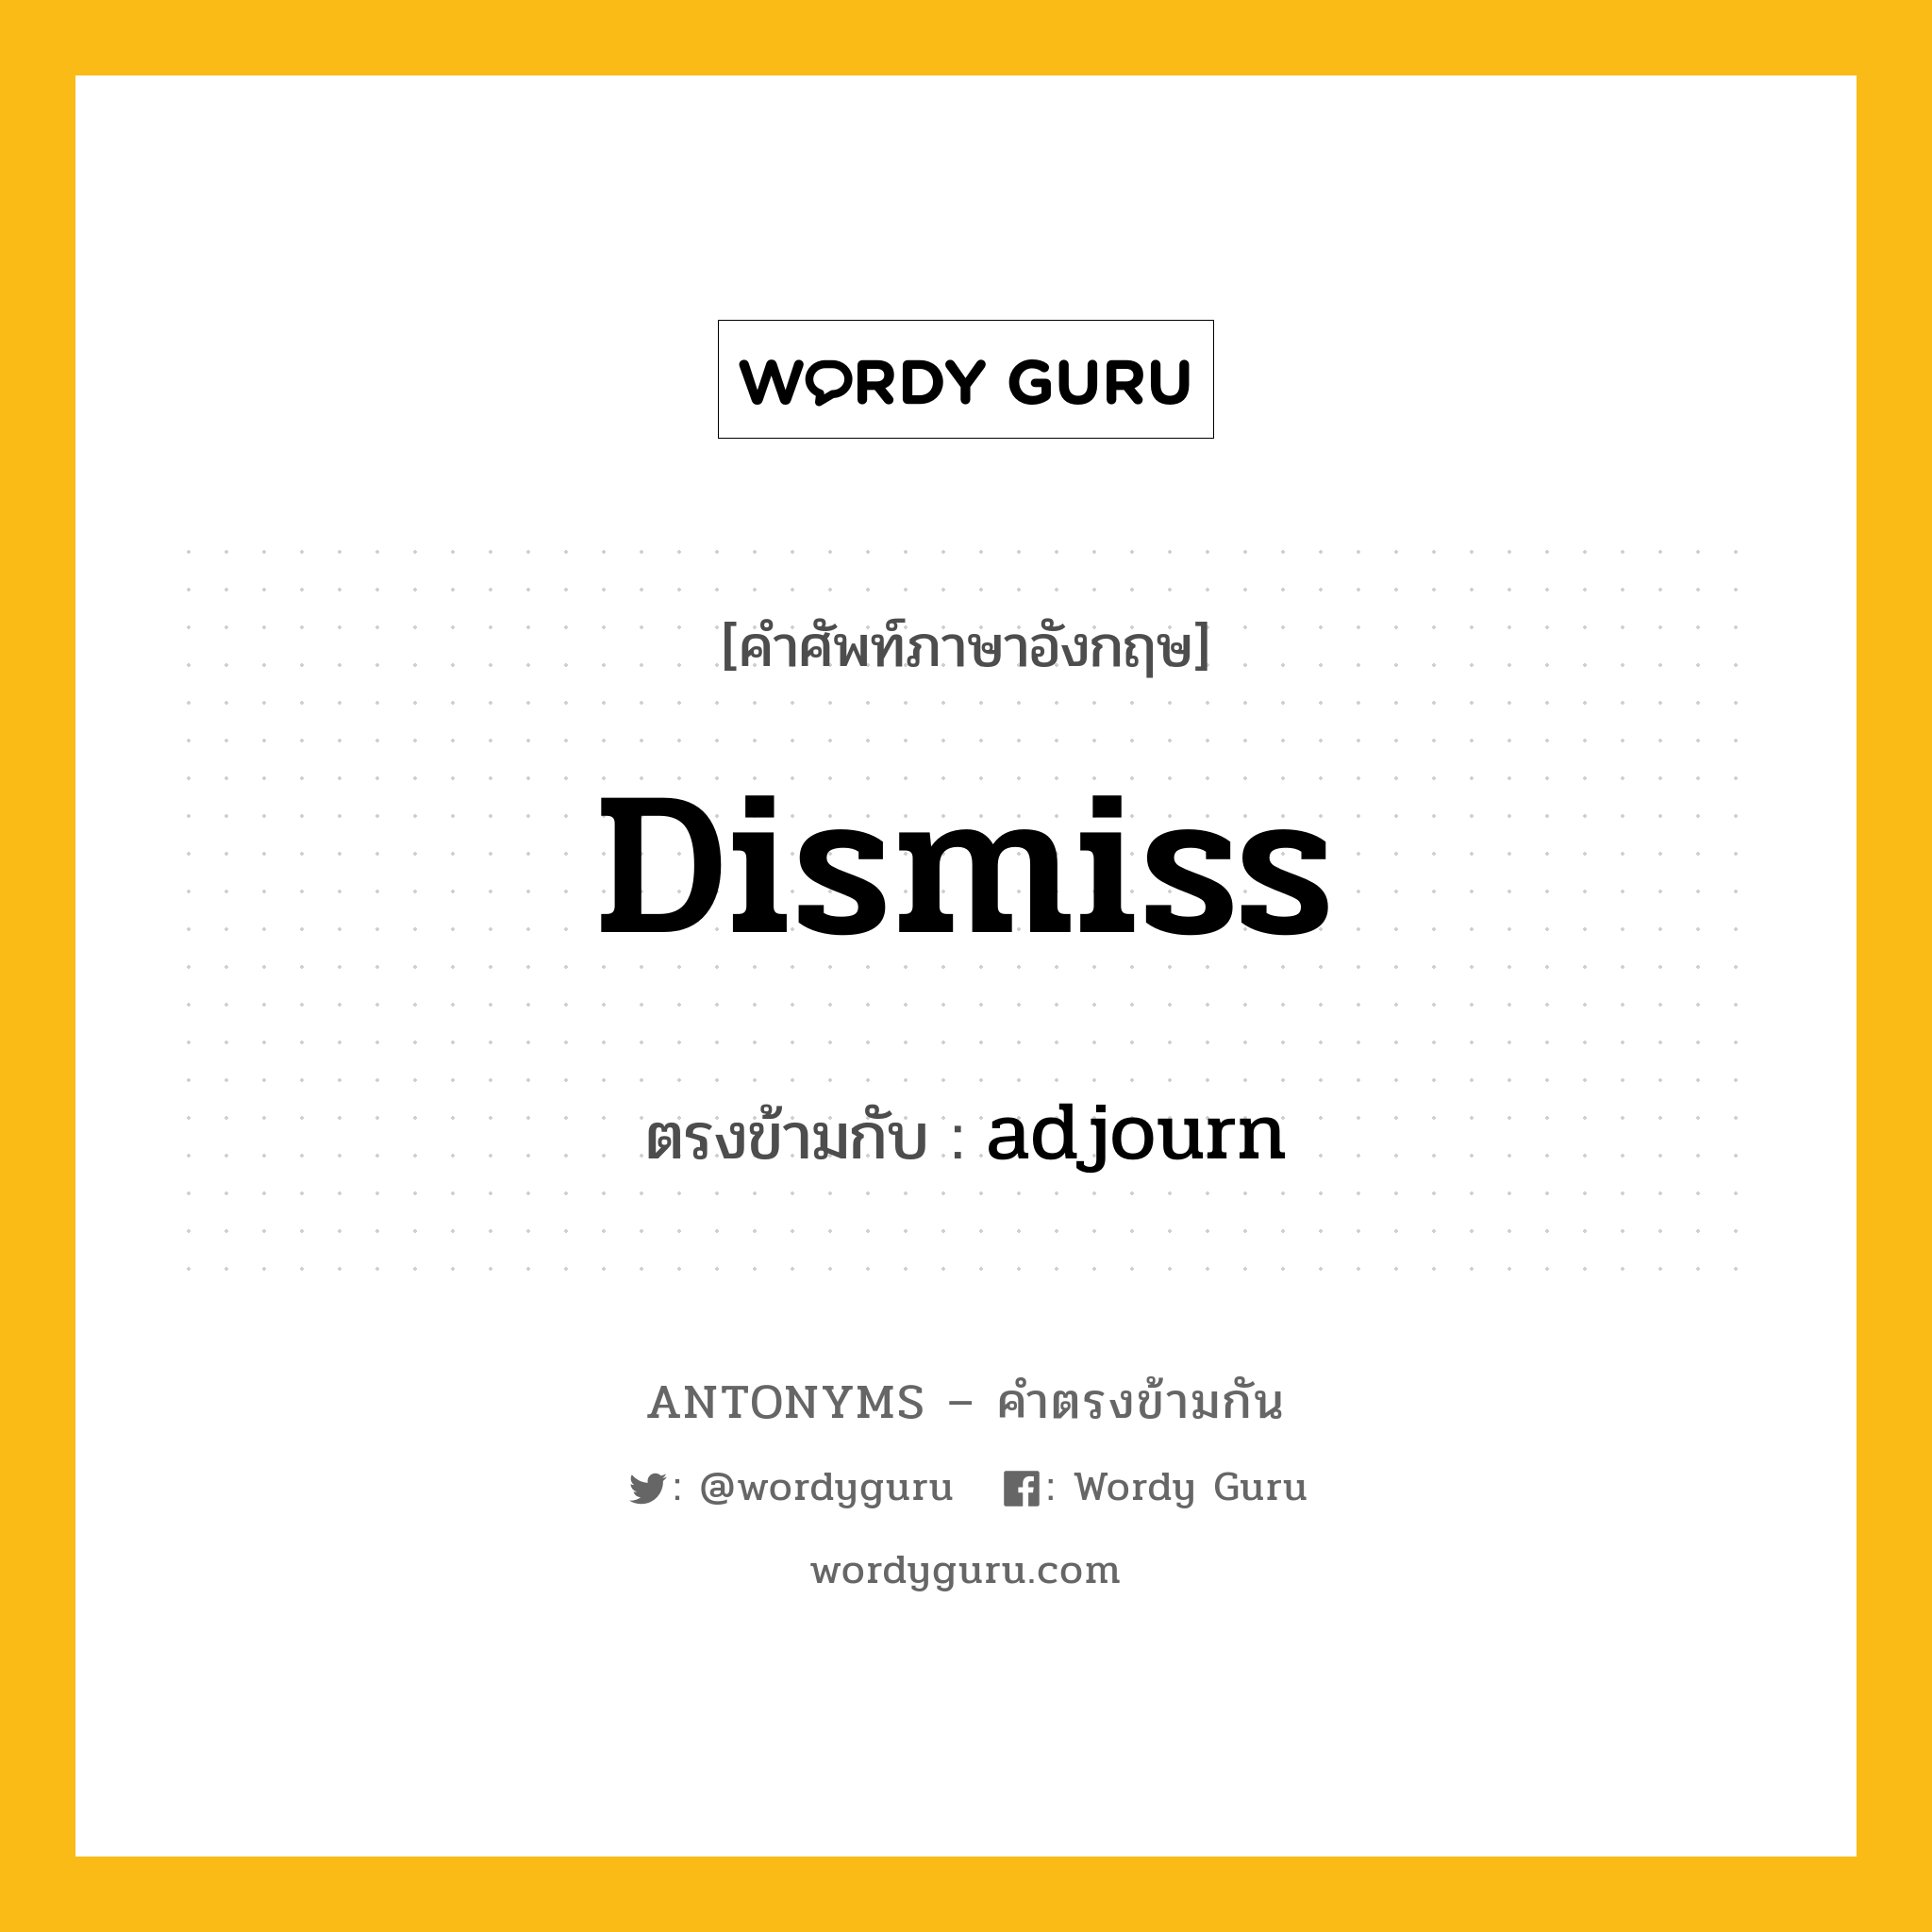 dismiss เป็นคำตรงข้ามกับคำไหนบ้าง?, คำศัพท์ภาษาอังกฤษ dismiss ตรงข้ามกับ adjourn หมวด adjourn